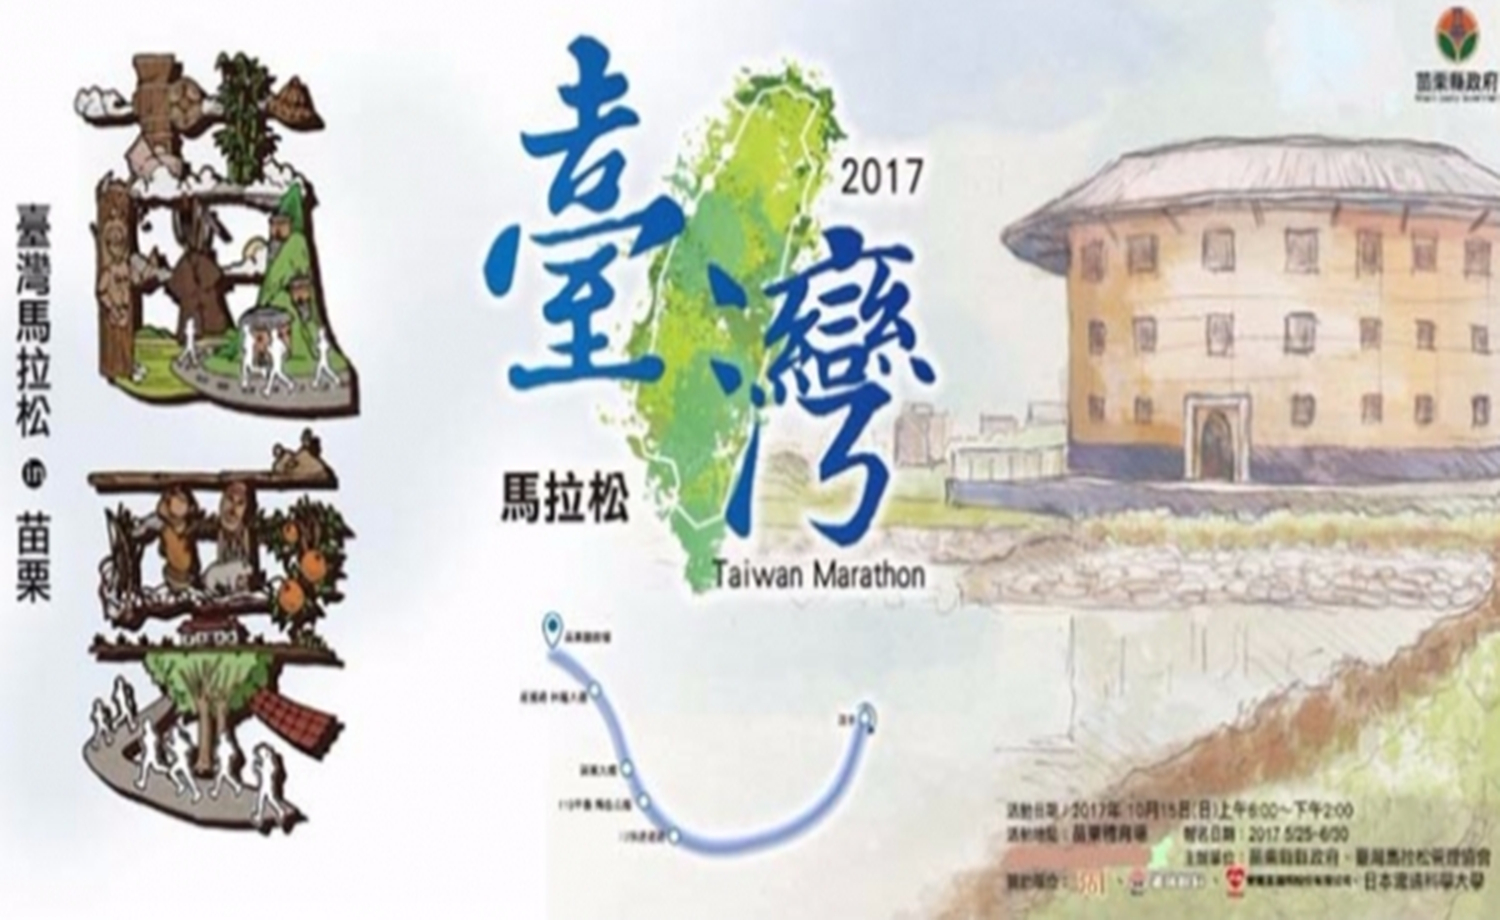 2017台湾马拉松 in苗栗